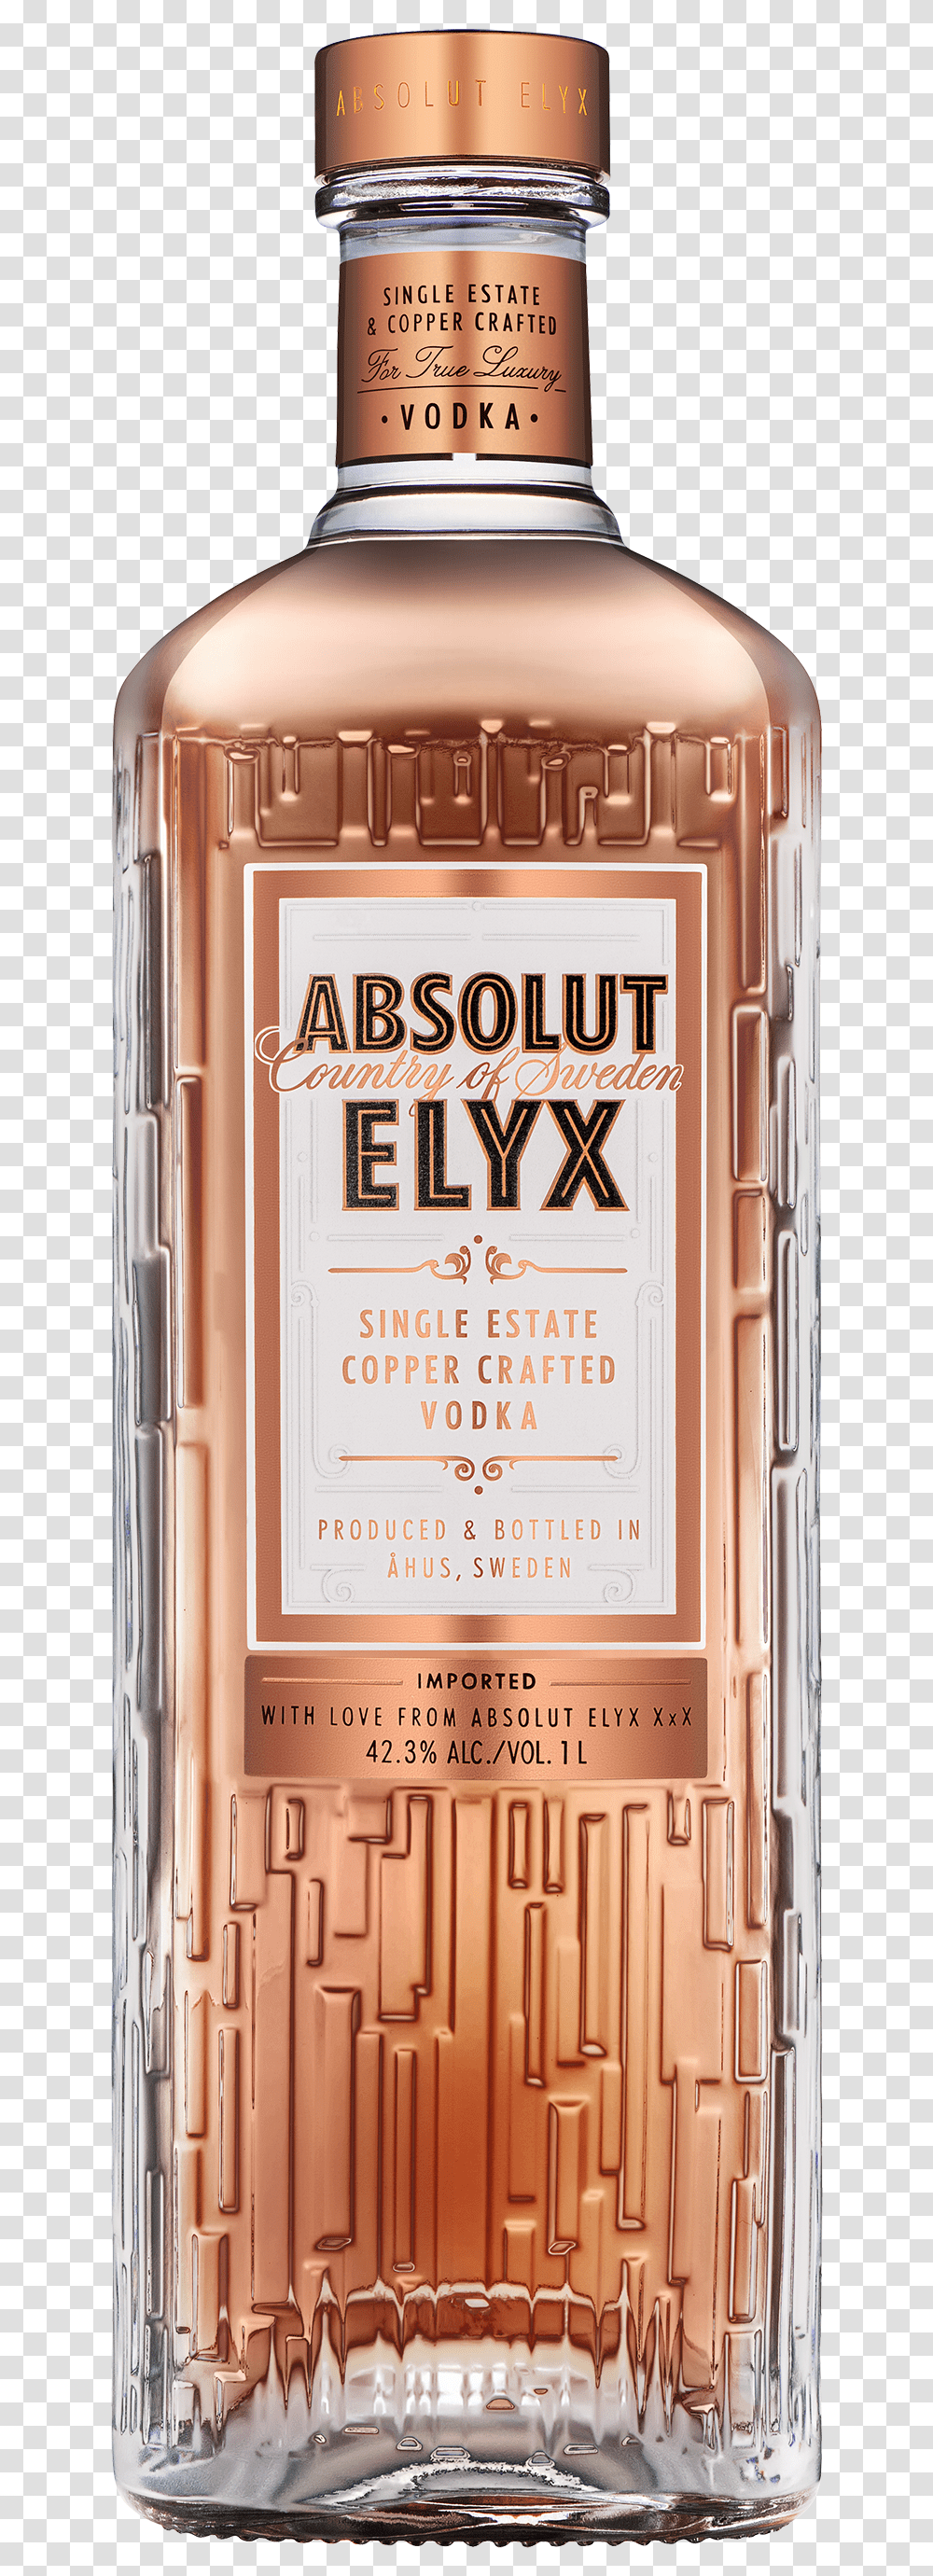 Image Absolut Elyx New Bottle, Liquor, Alcohol, Beverage, Gas Pump Transparent Png